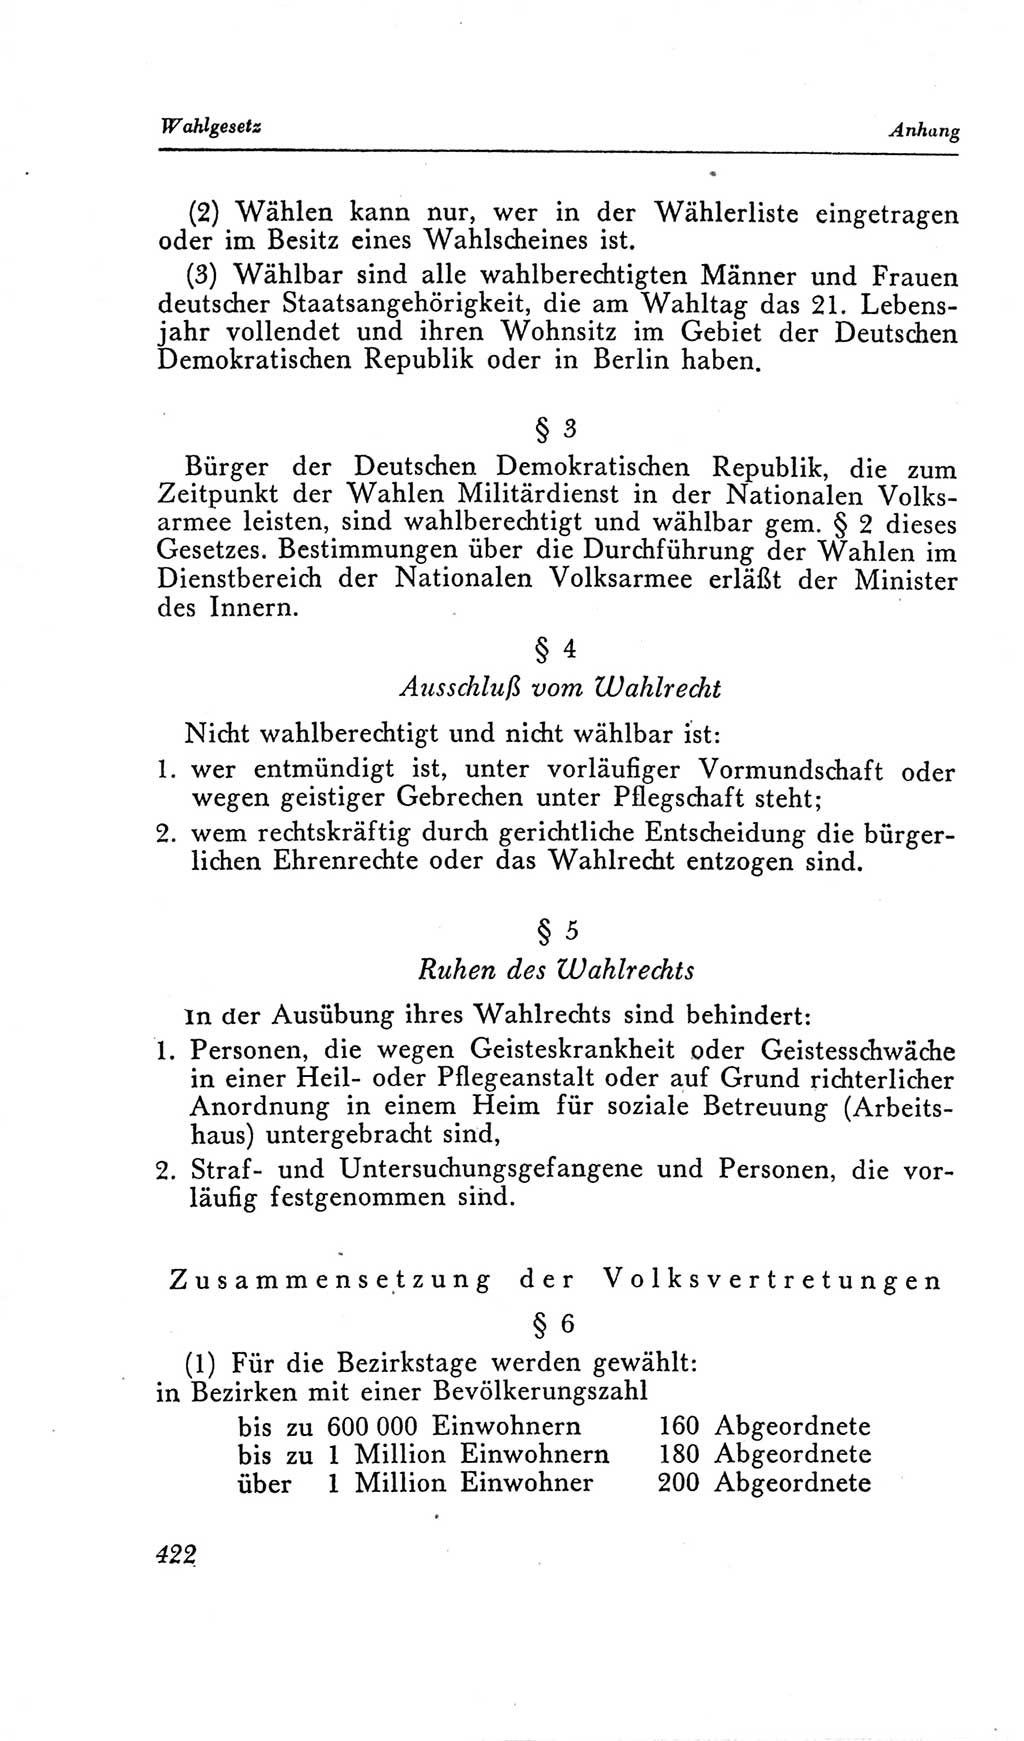 Handbuch der Volkskammer (VK) der Deutschen Demokratischen Republik (DDR), 2. Wahlperiode 1954-1958, Seite 422 (Hdb. VK. DDR, 2. WP. 1954-1958, S. 422)